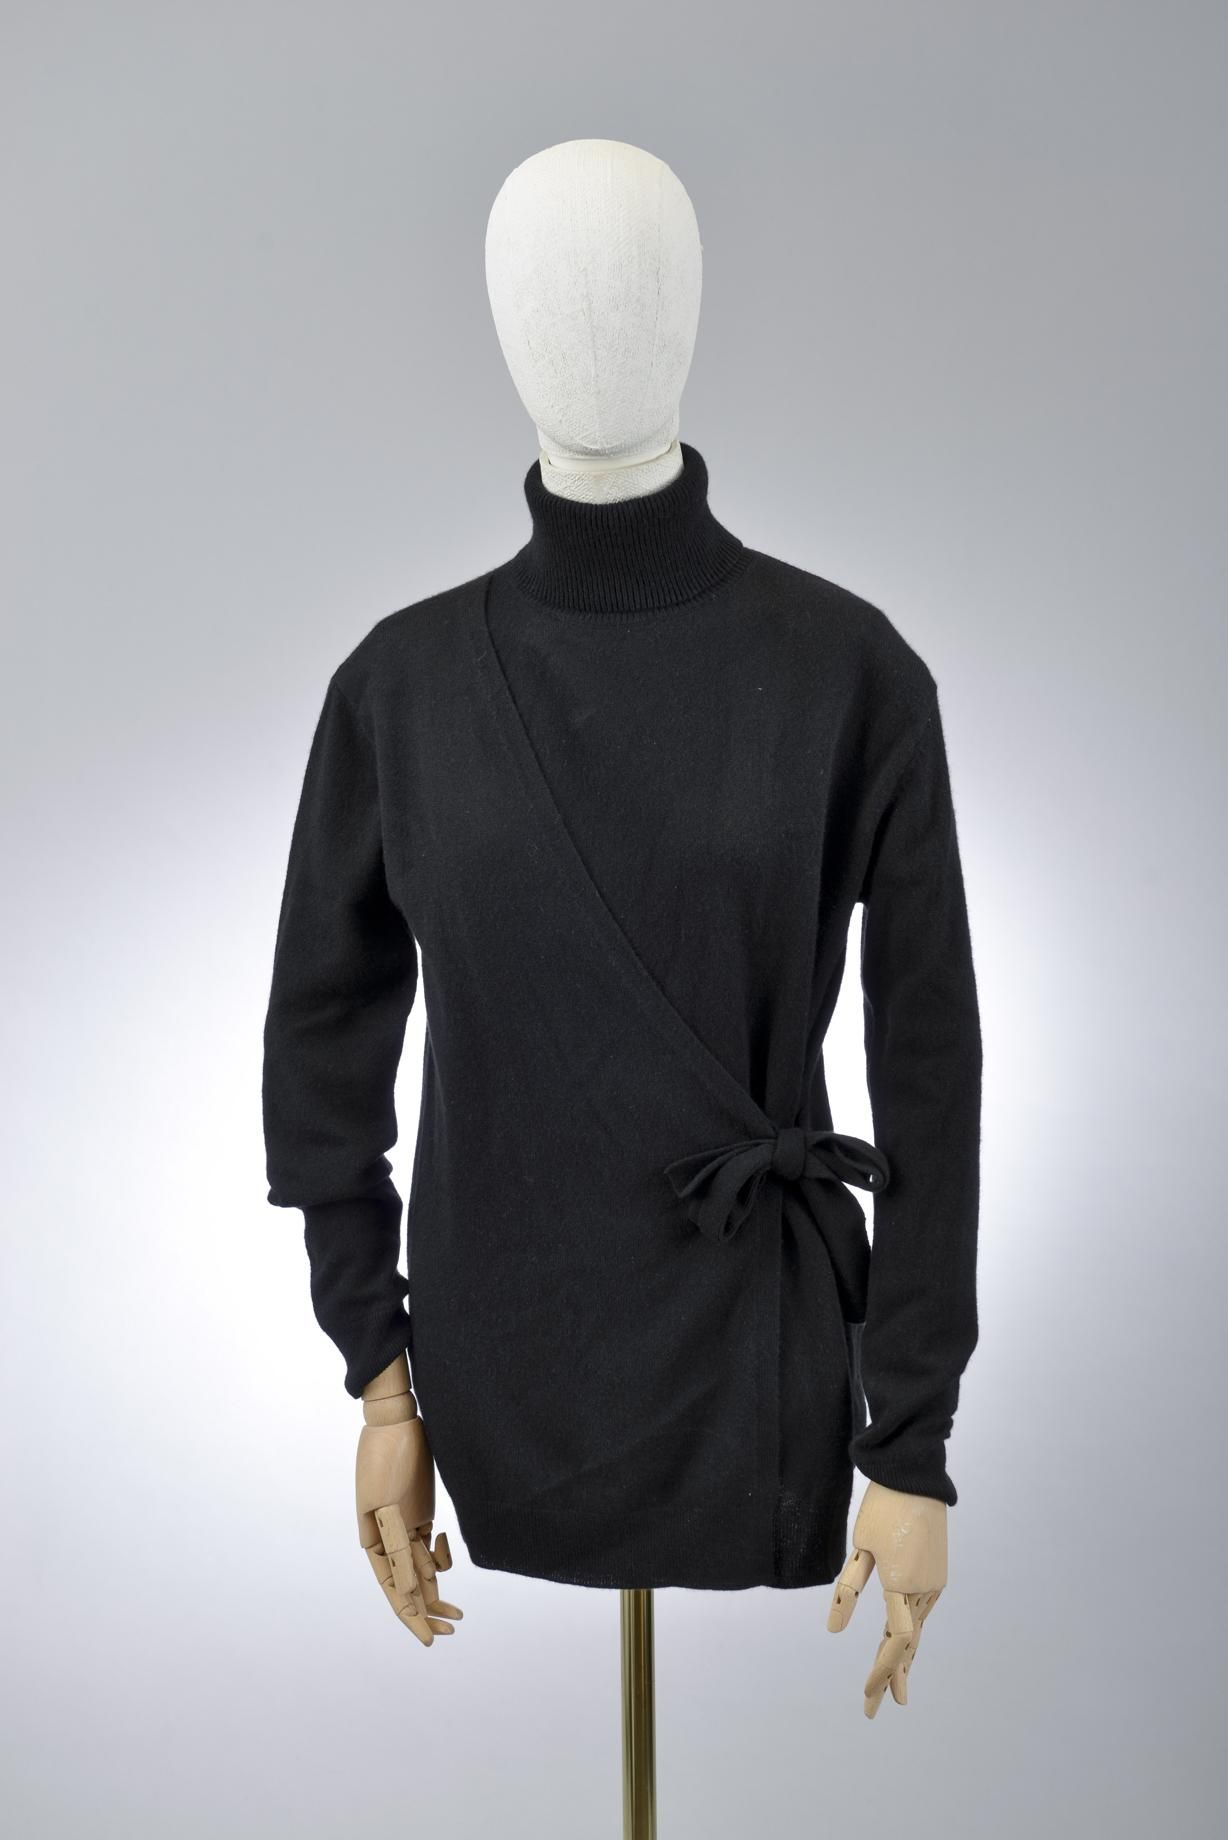 Null *尺寸XS DVF - Diane Von Fürstenberg

套装包括。

-长款羊毛和羊绒包裹的毛衣，型号为 "DVF Pomona"，纯黑&hellip;